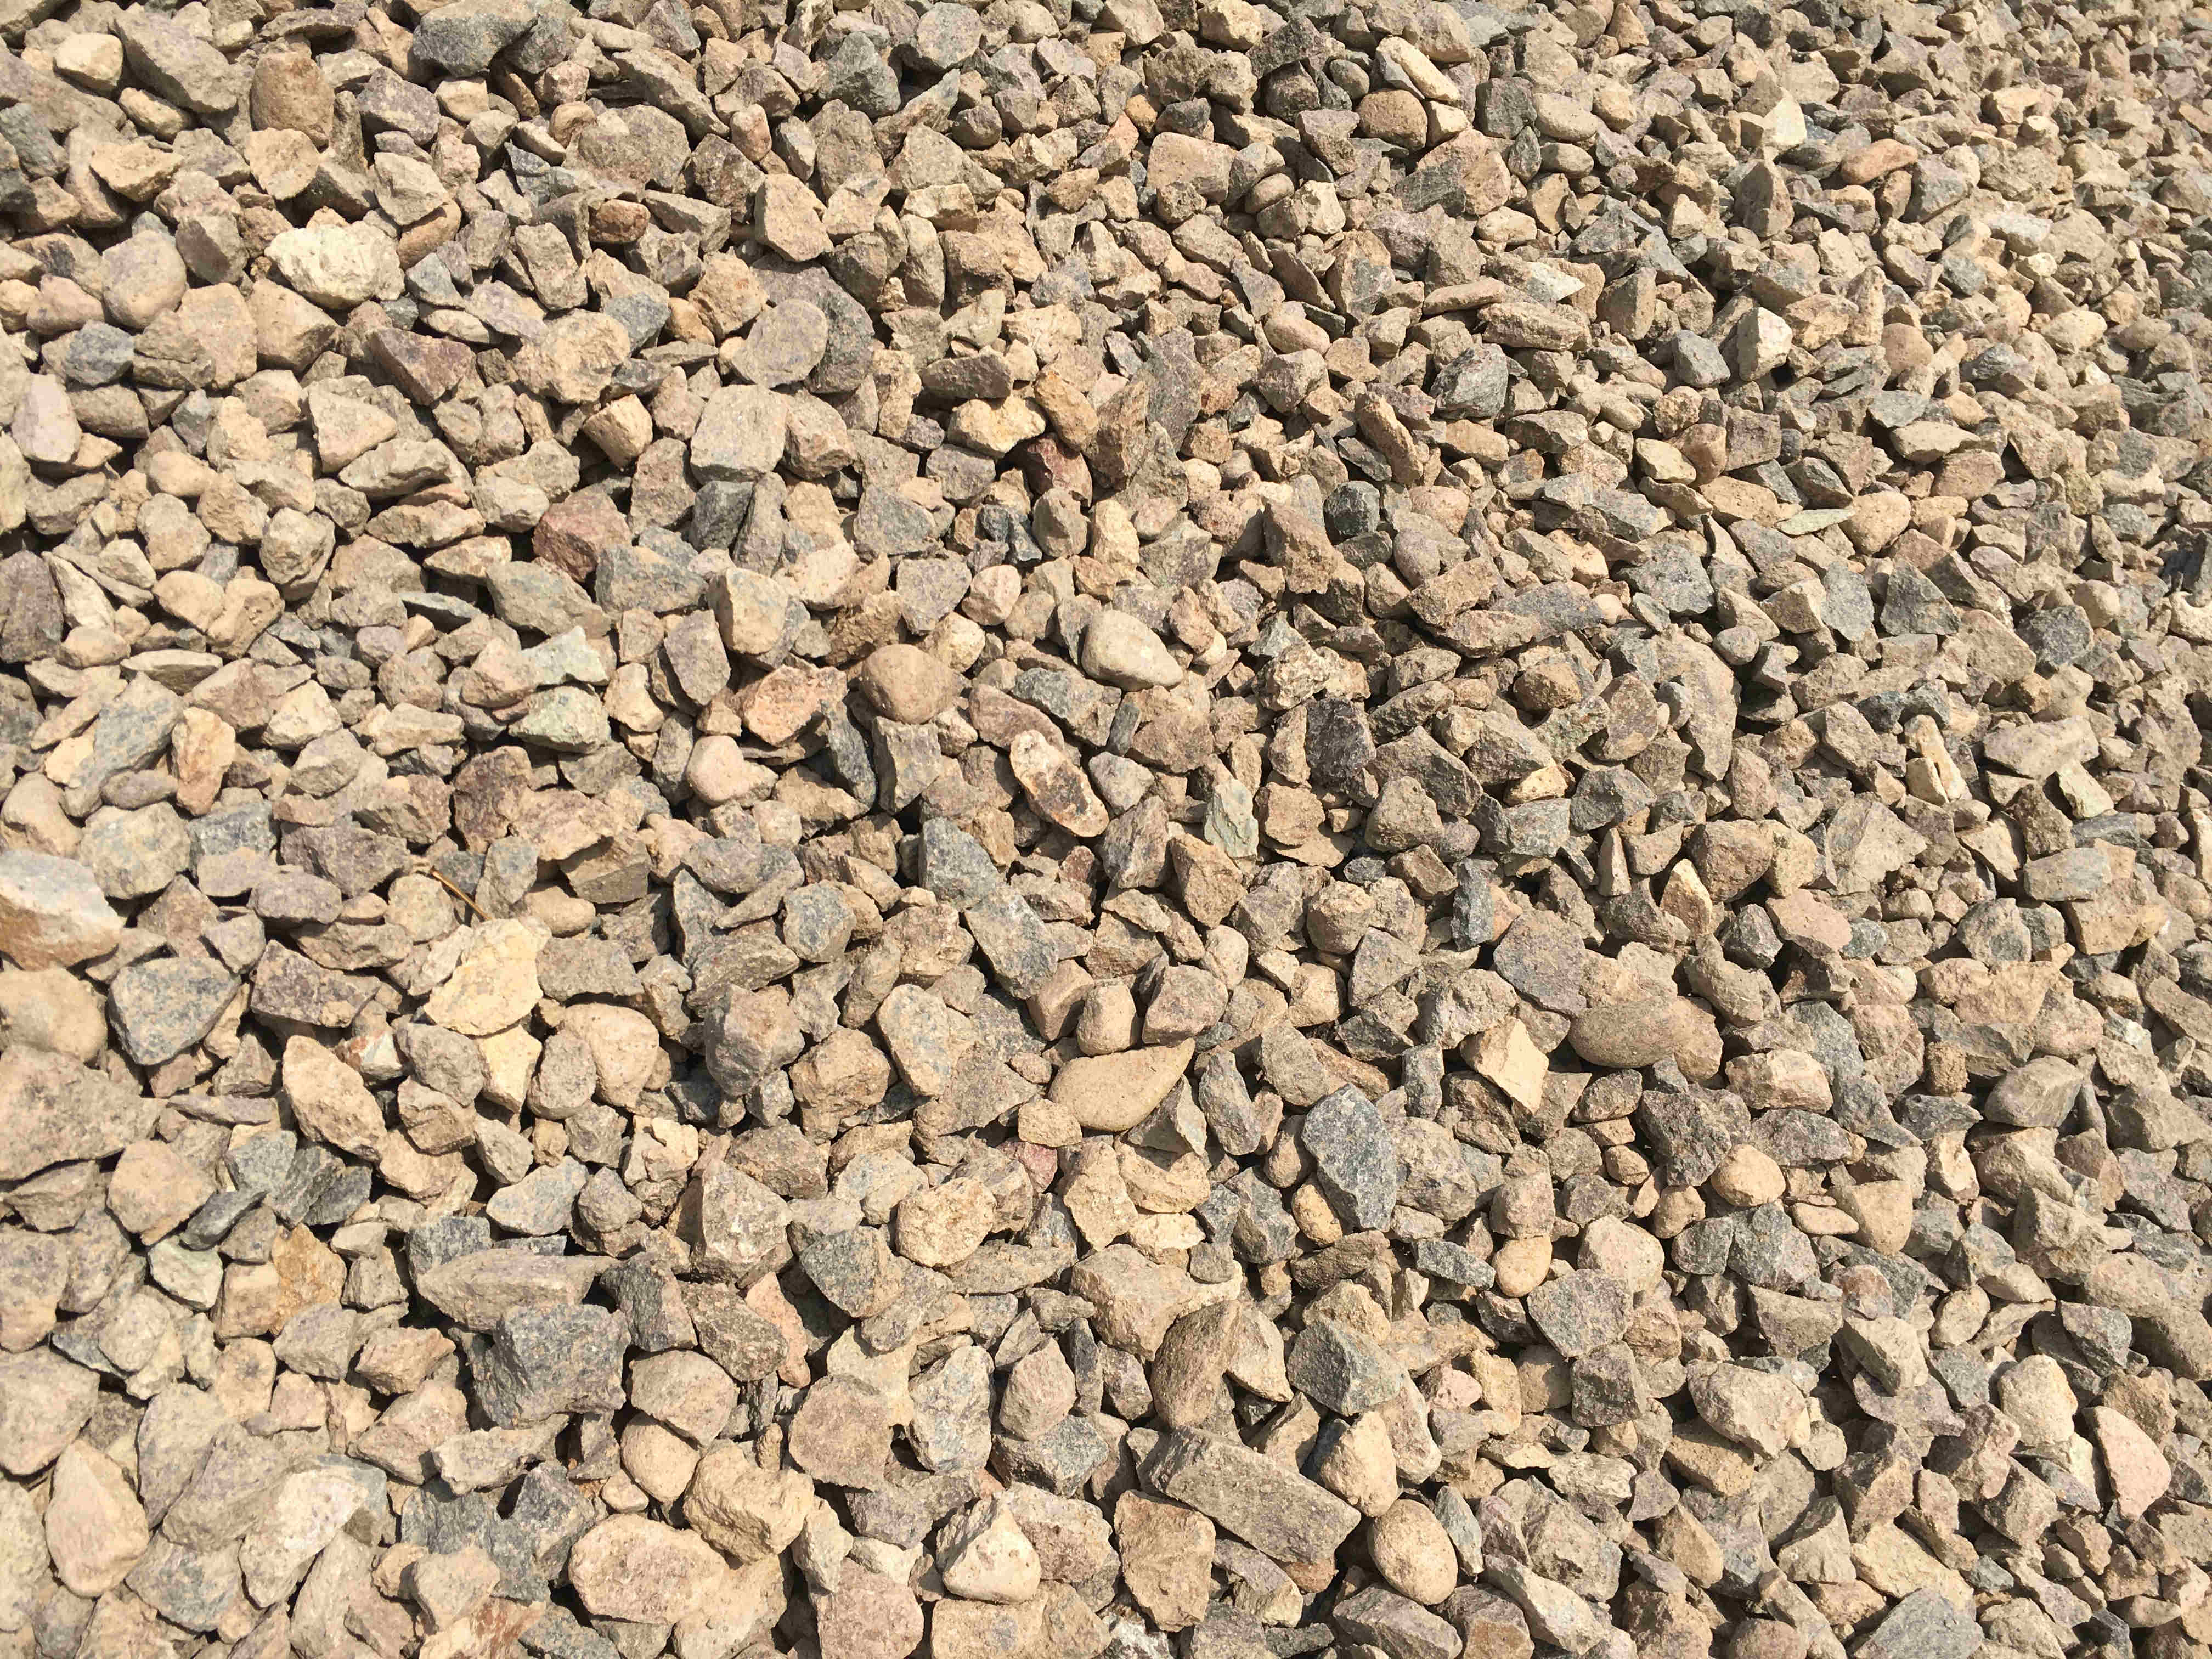 【机制砂】劣质的机制砂不符合铁路的建设要求？高品质砂石骨料加工的流程有哪些?